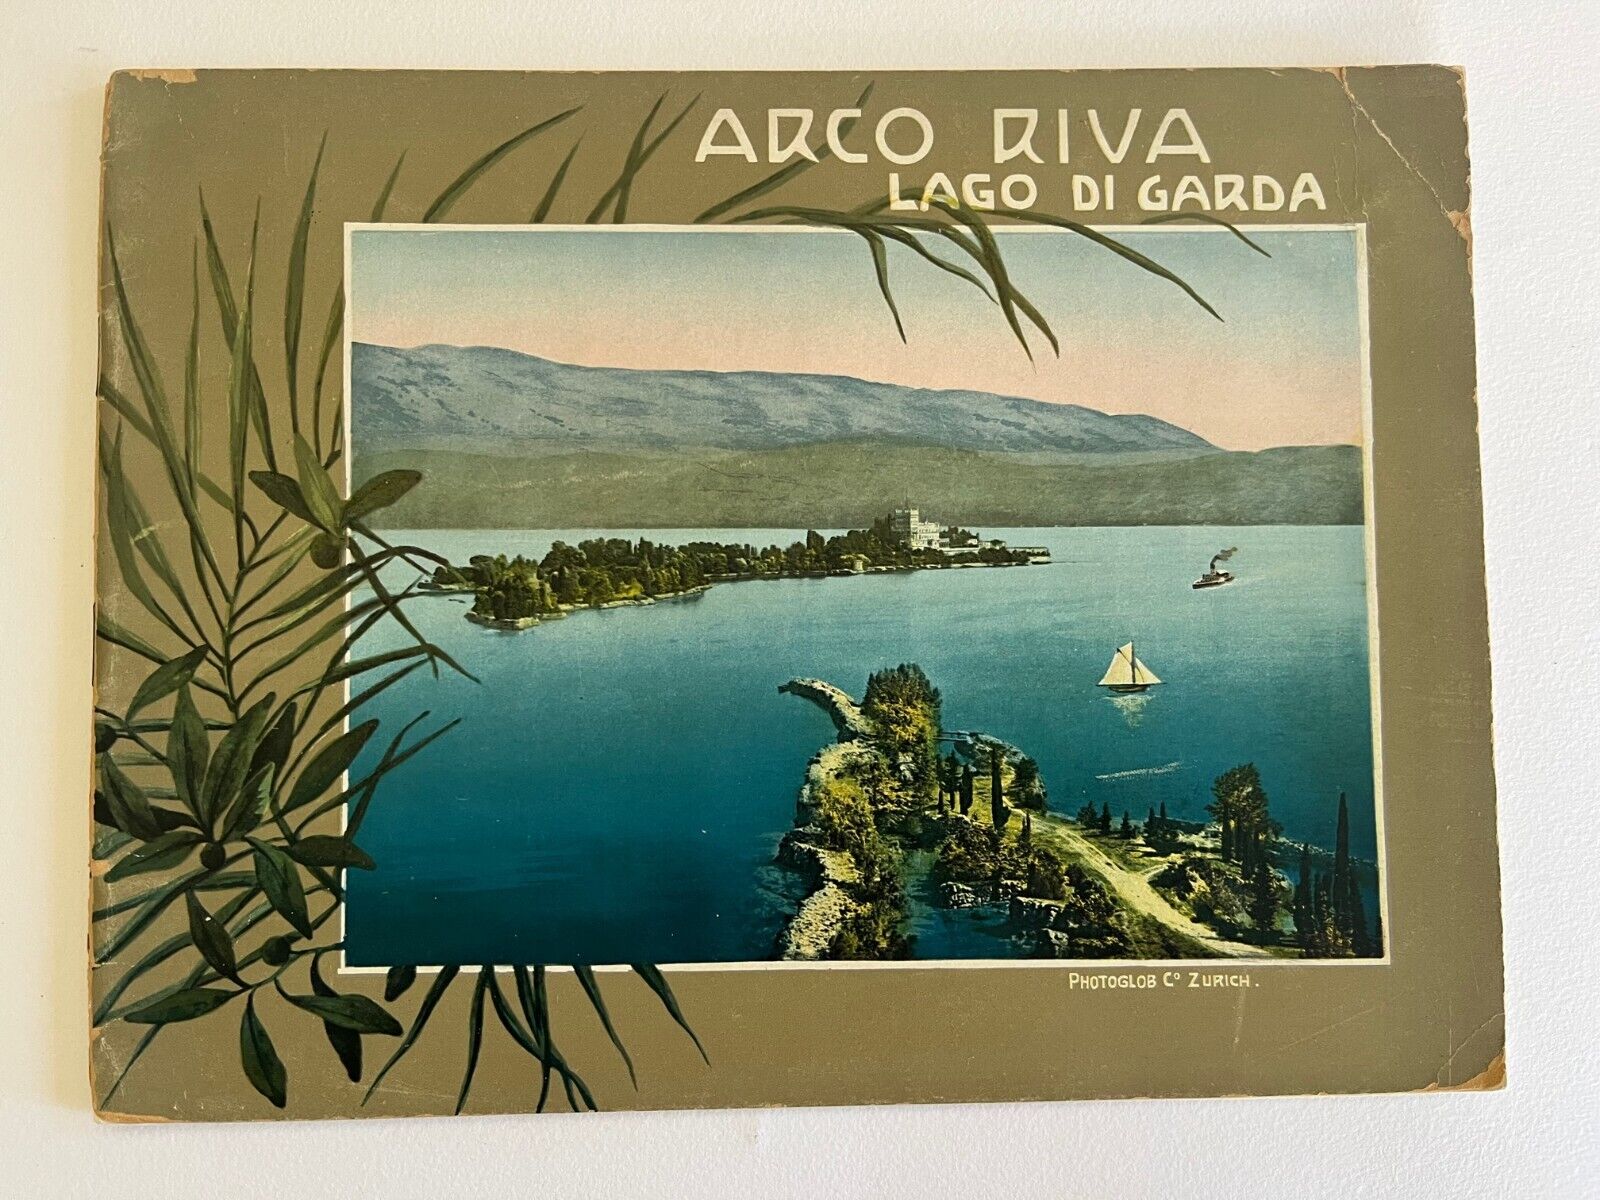 1906 ARCO RIVA LAGO DI GARDA Photoglob Souvenir-Album, Zurich Italy Alps antique